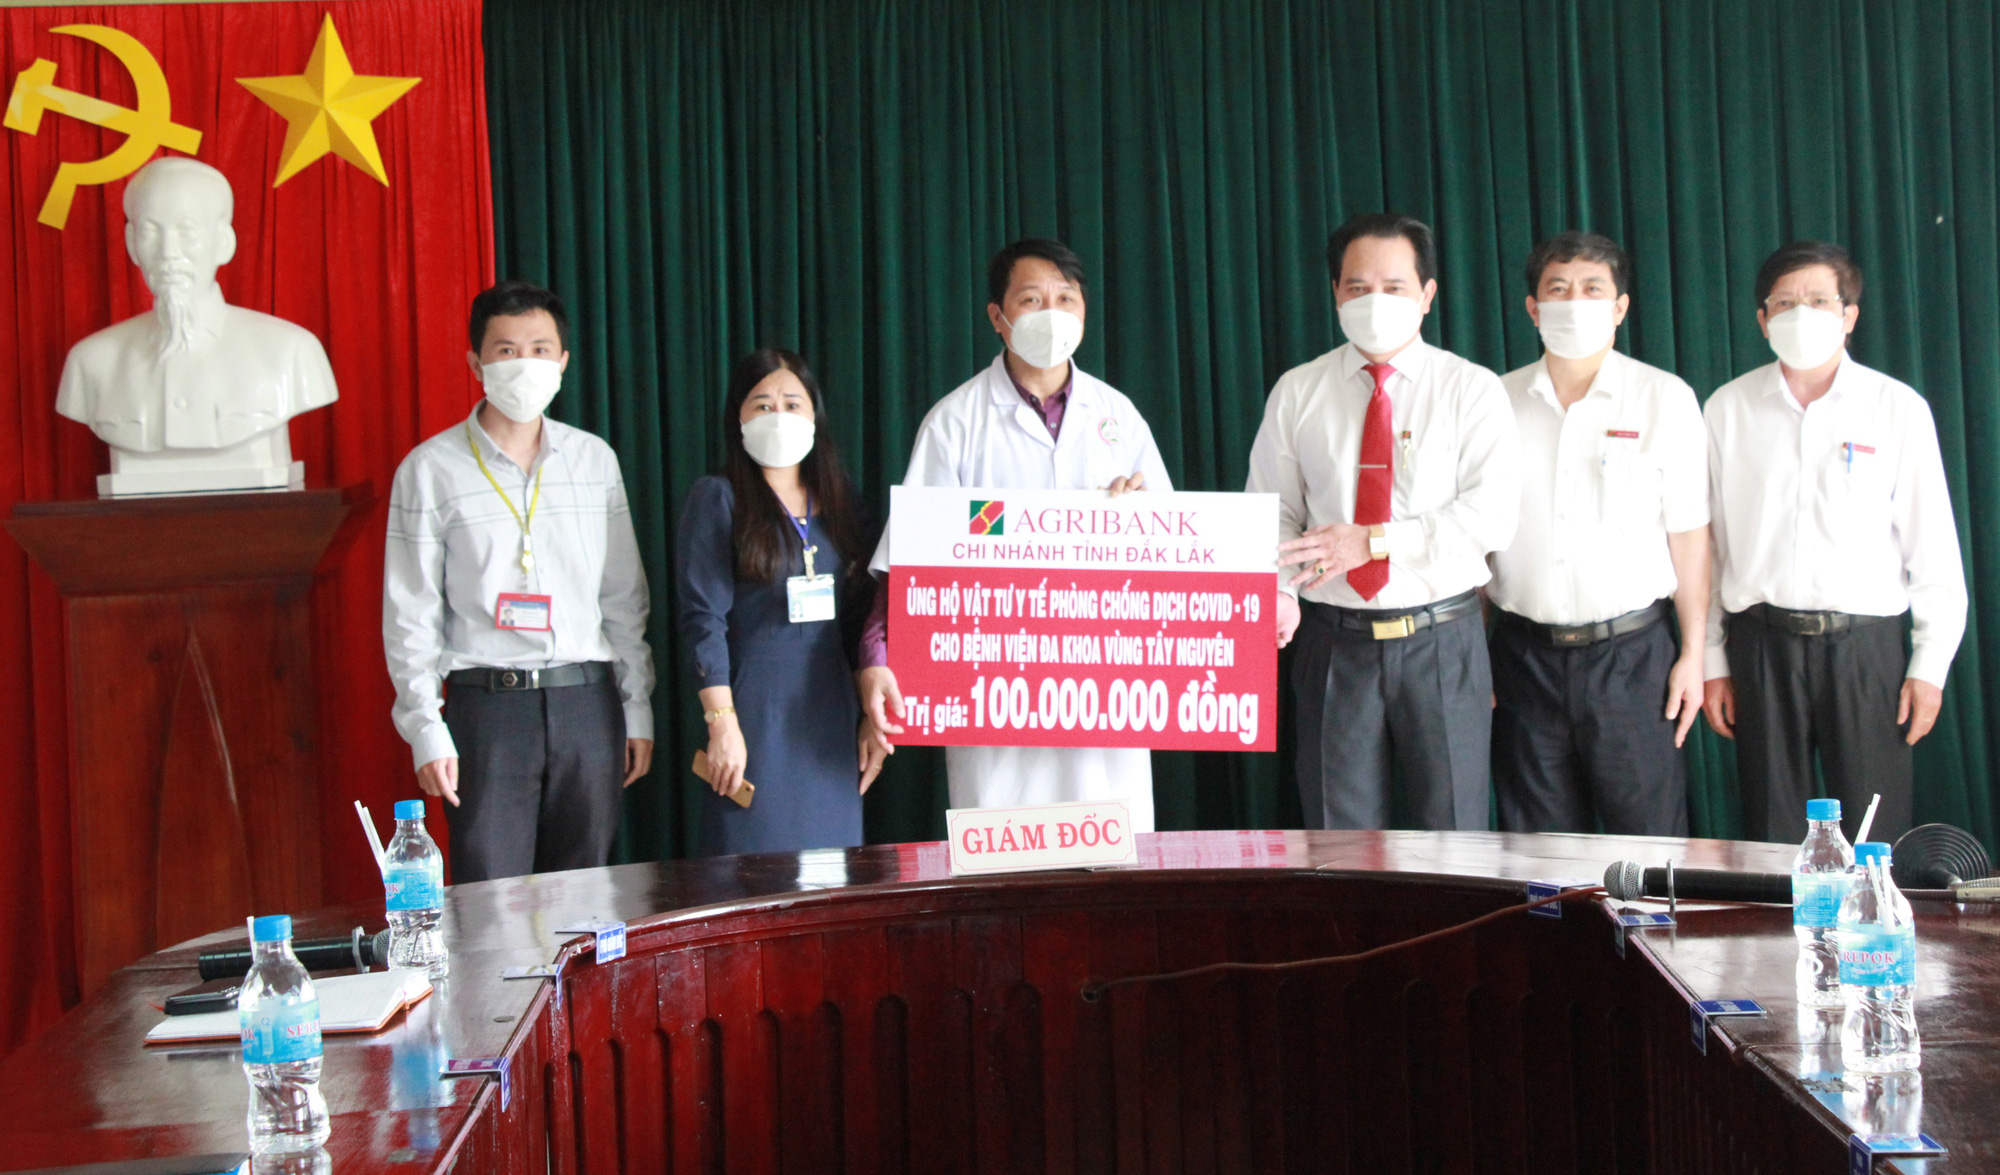 Agribank tỉnh Đắk Lắk ủng hộ 100 triệu đồng, phục vụ công tác phòng chống dịch covid-19. - Ảnh 1.